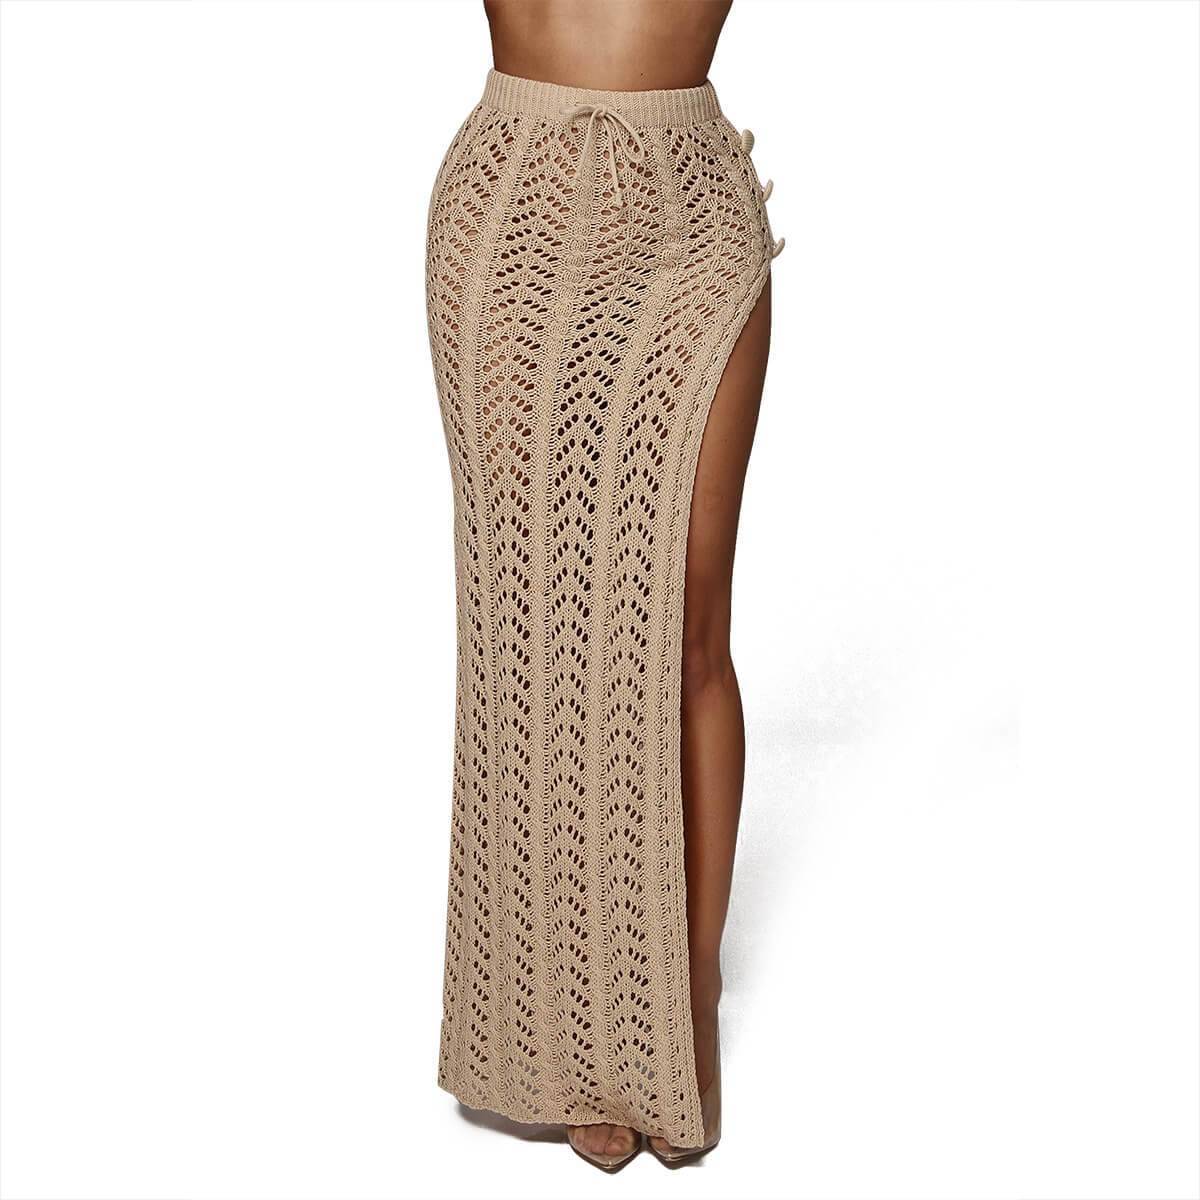 Sexy Beach Knit Cutout High Waist Maxi Dress